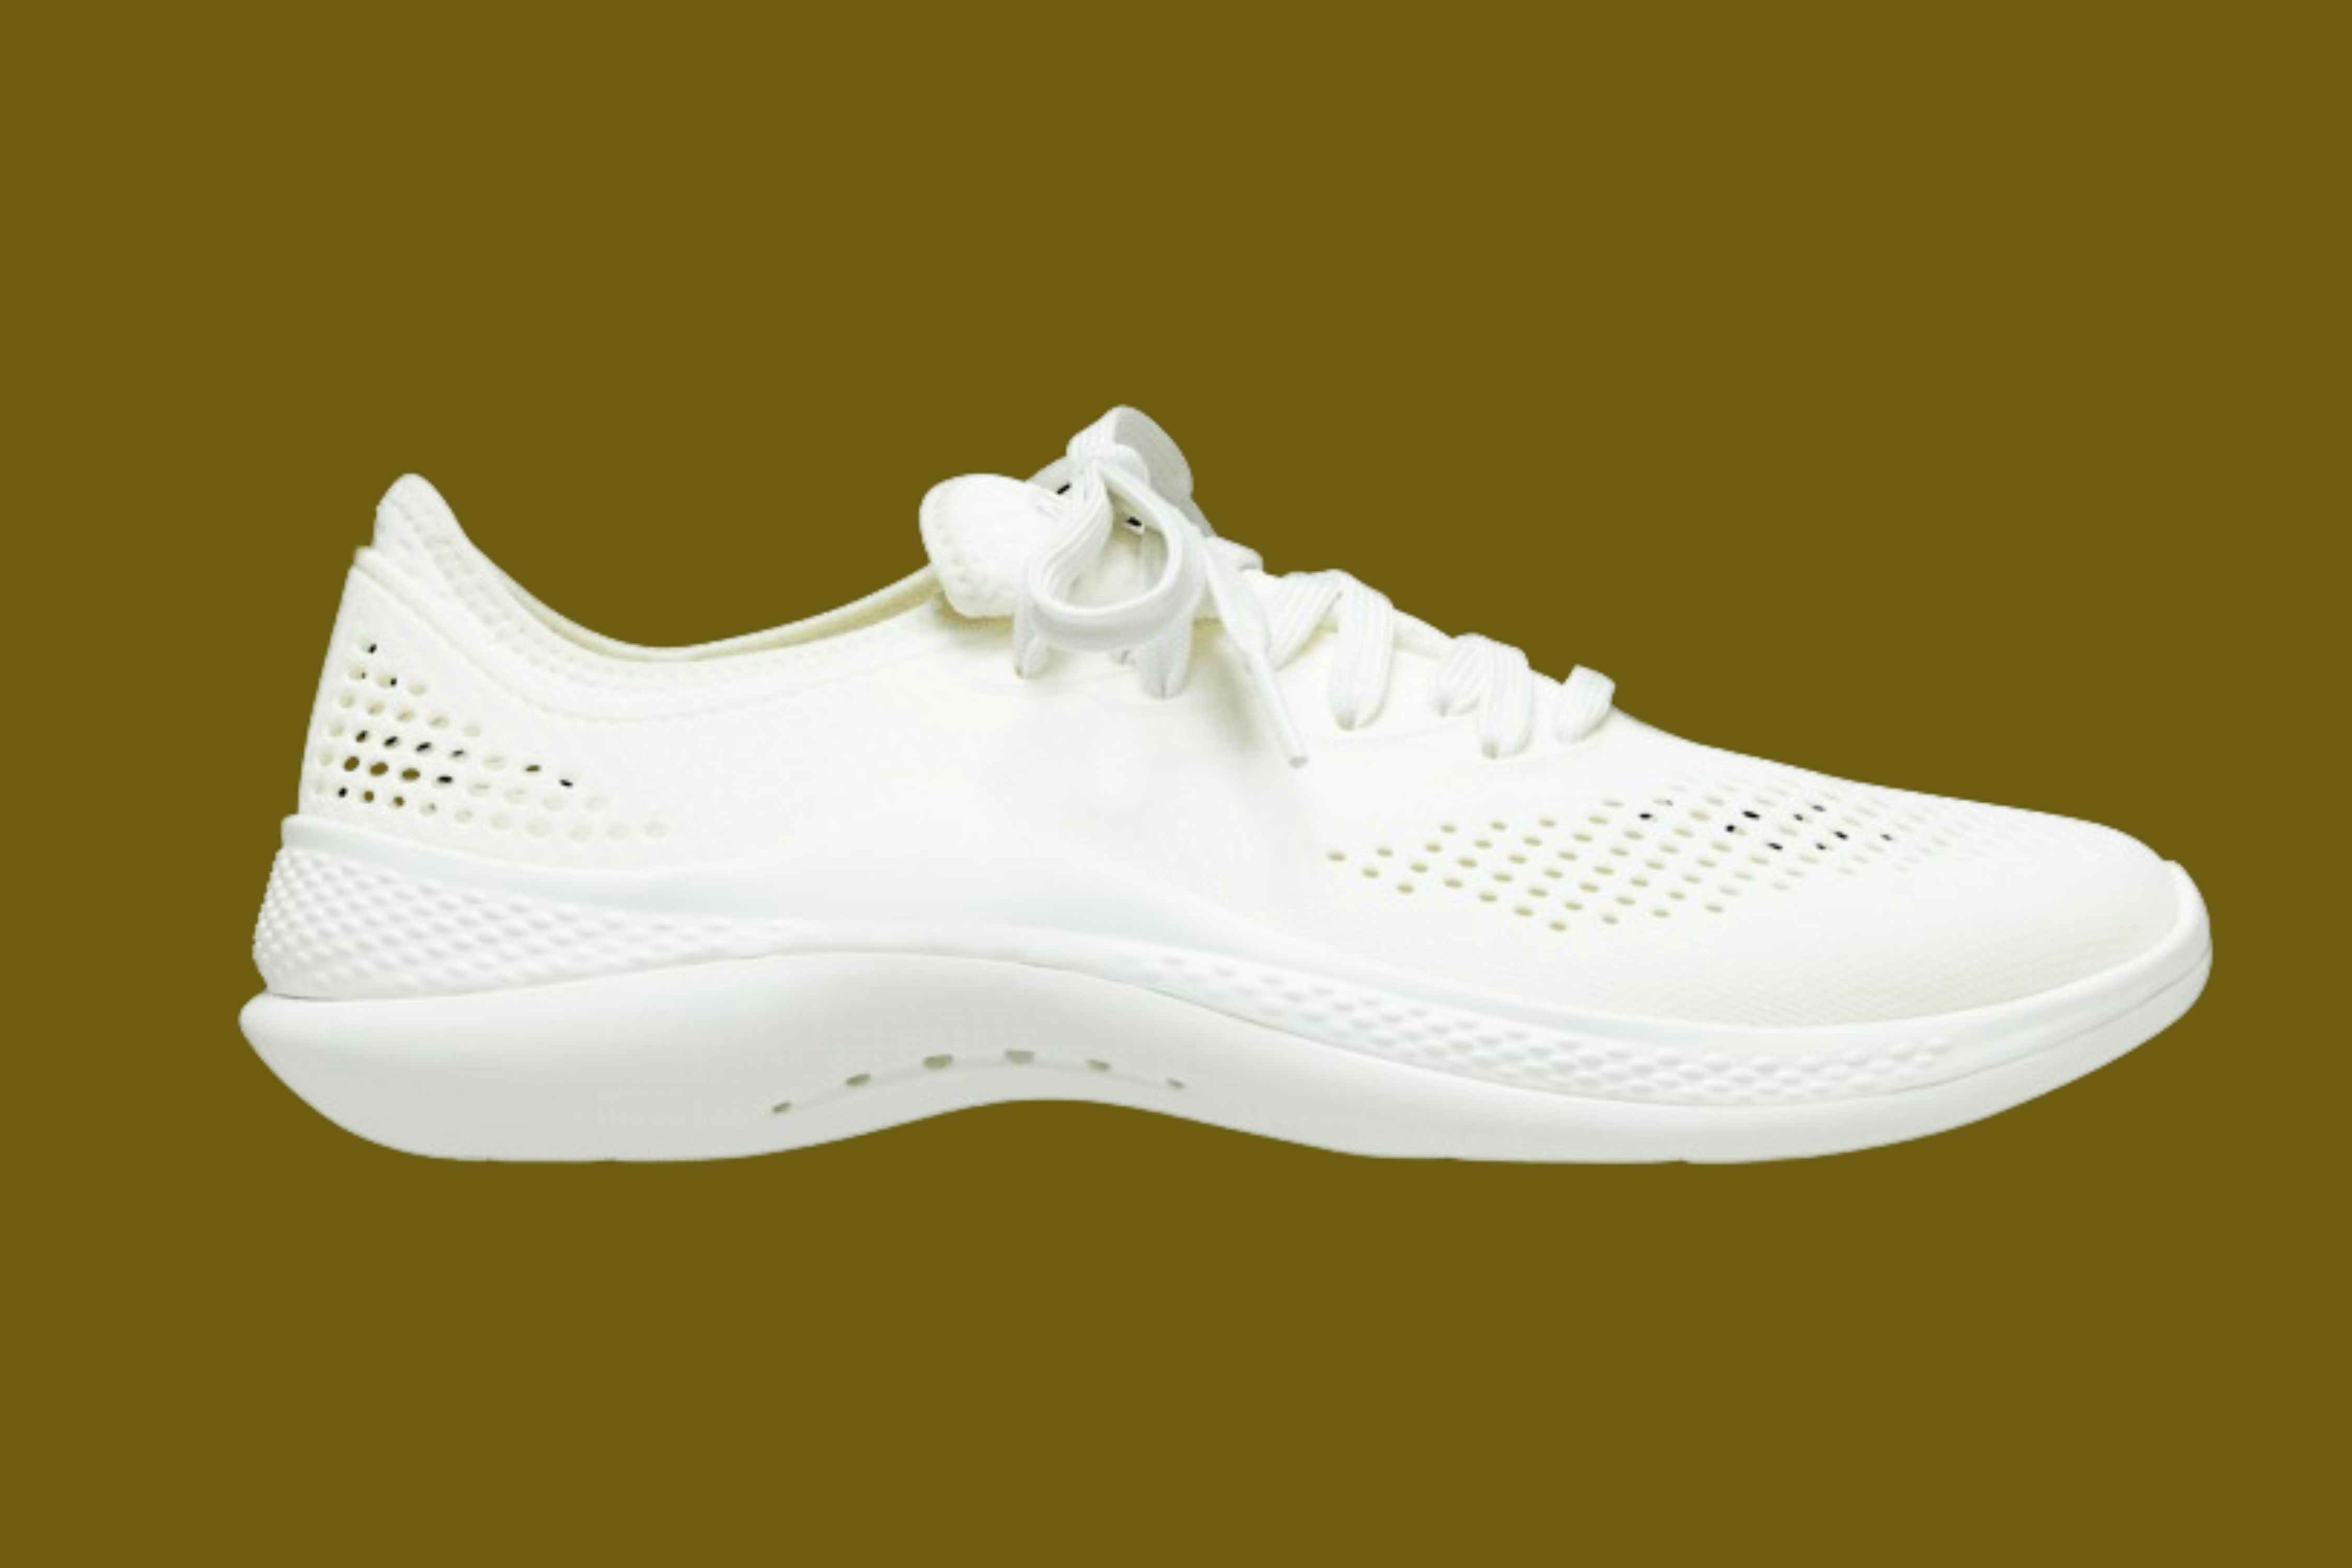 Crocs Women's Sneakers, Just $34 (Reg. $65)